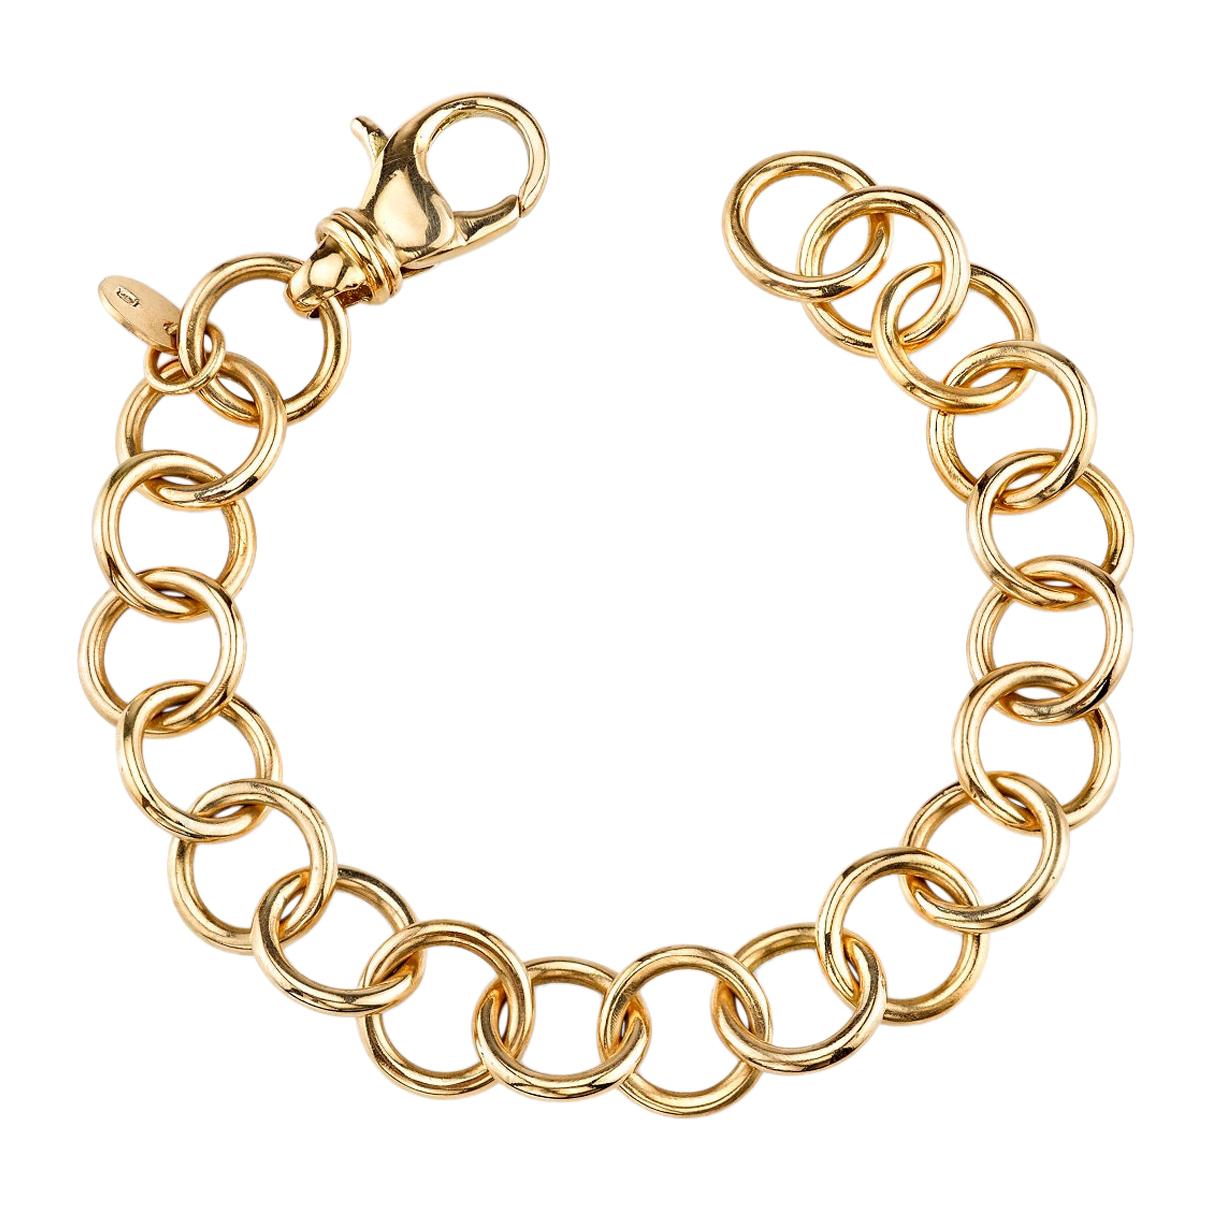 Handcrafted 18k Gold Club Bracelet